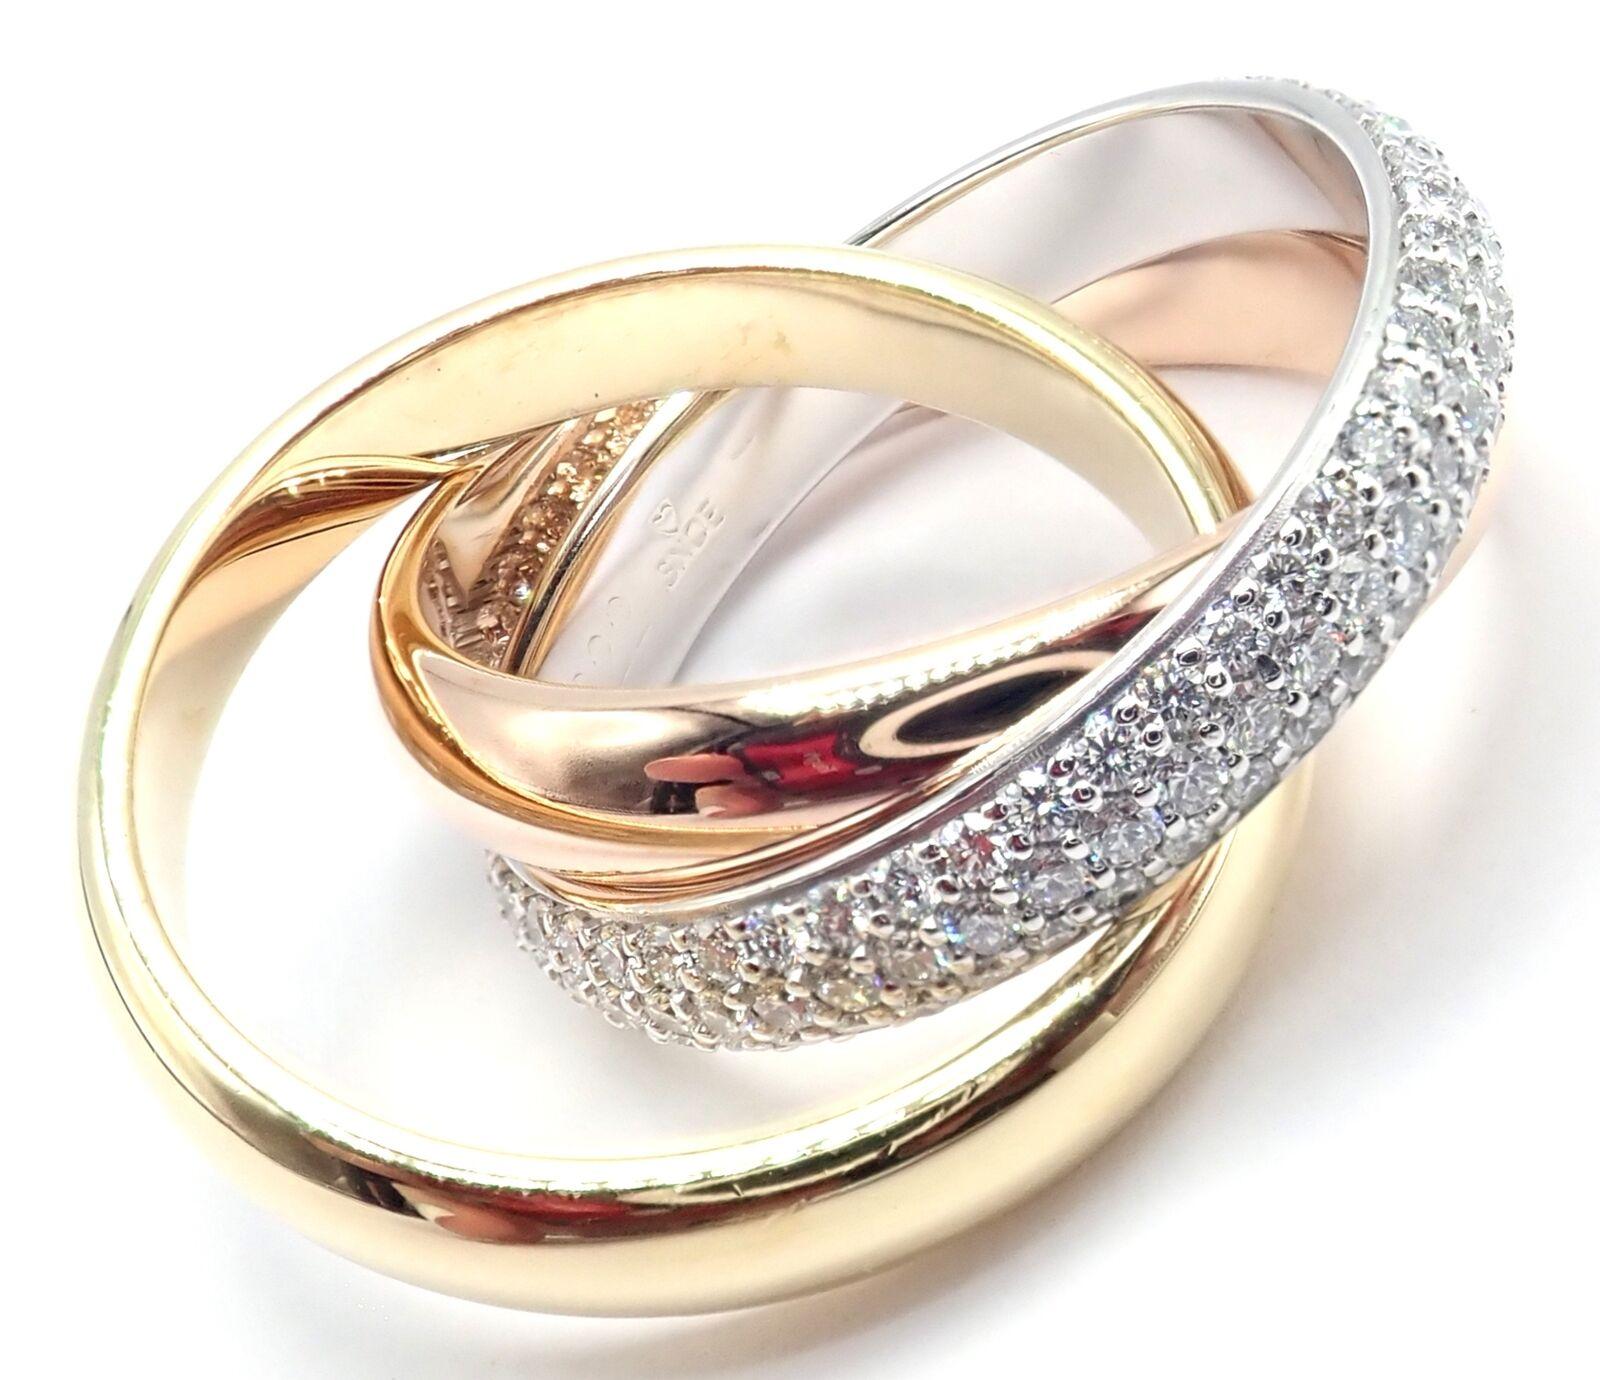 18k Tri-Color Gold Pave Diamant Klassisch Trinity  Bandring von Cartier.
Mit 156 runden Diamanten im Brillantschliff, Reinheit VVS1, Farbe F-H, Gesamtgewicht ca. 0,64 ct.
Dieser Ring wird mit einer Cartier-Schachtel und einem Cartier-Servicepapier